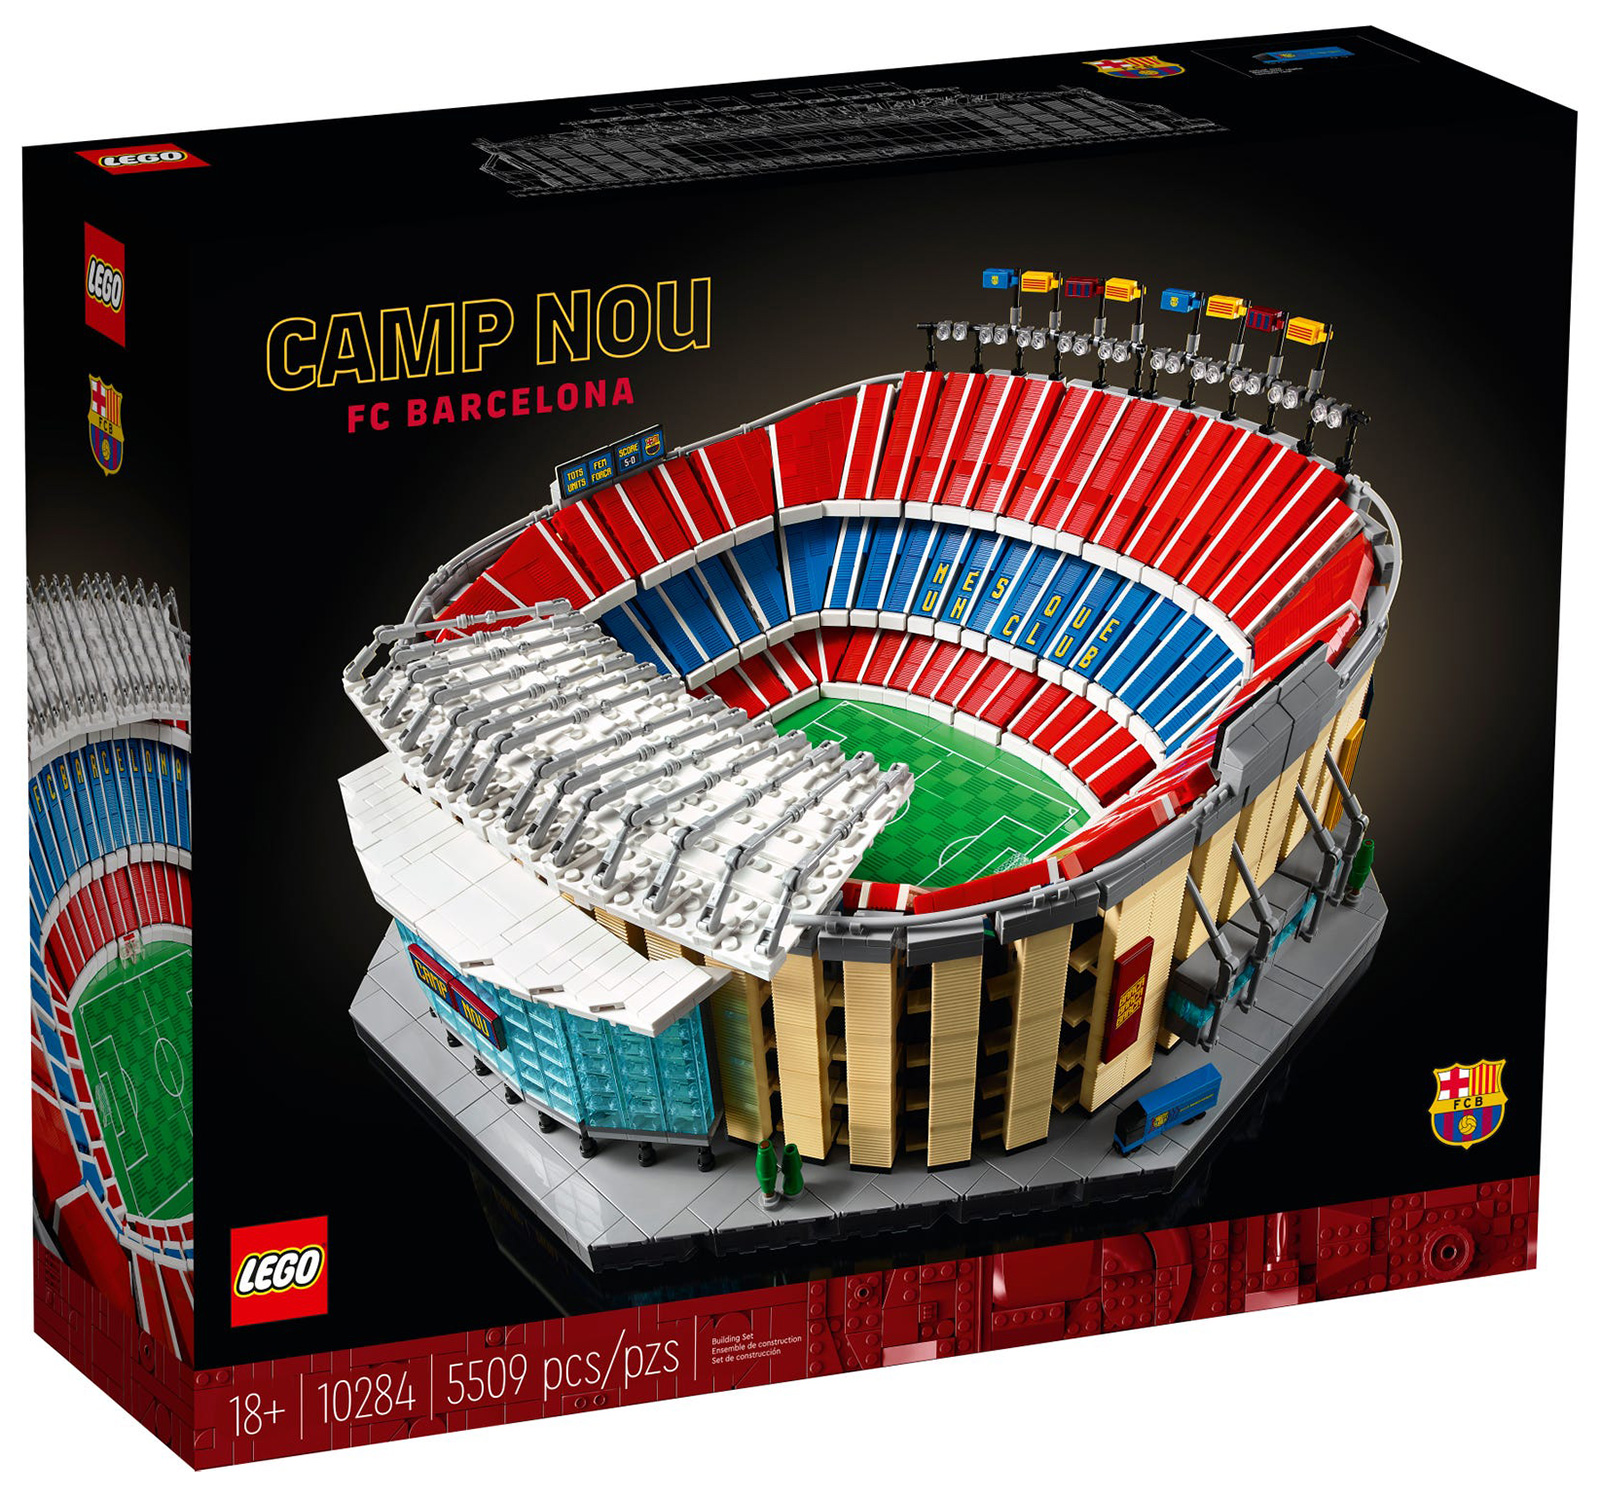 LEGO Creator 10284 pas cher, Le Camp Nou - FC Barcelone